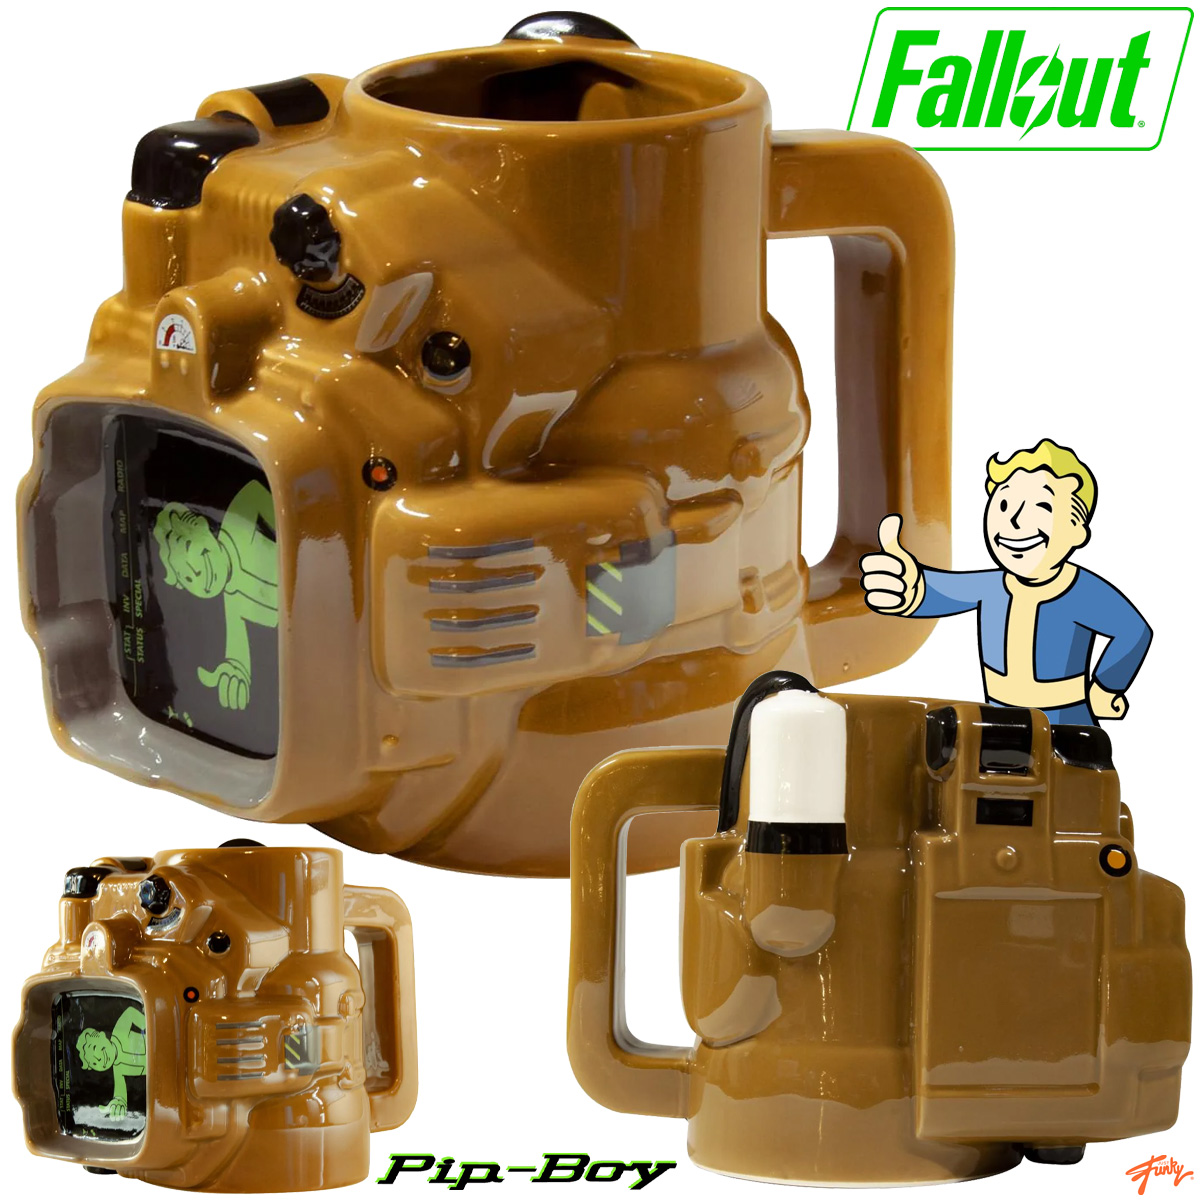 Caneca Esculpida Pip Boy da Série Fallout